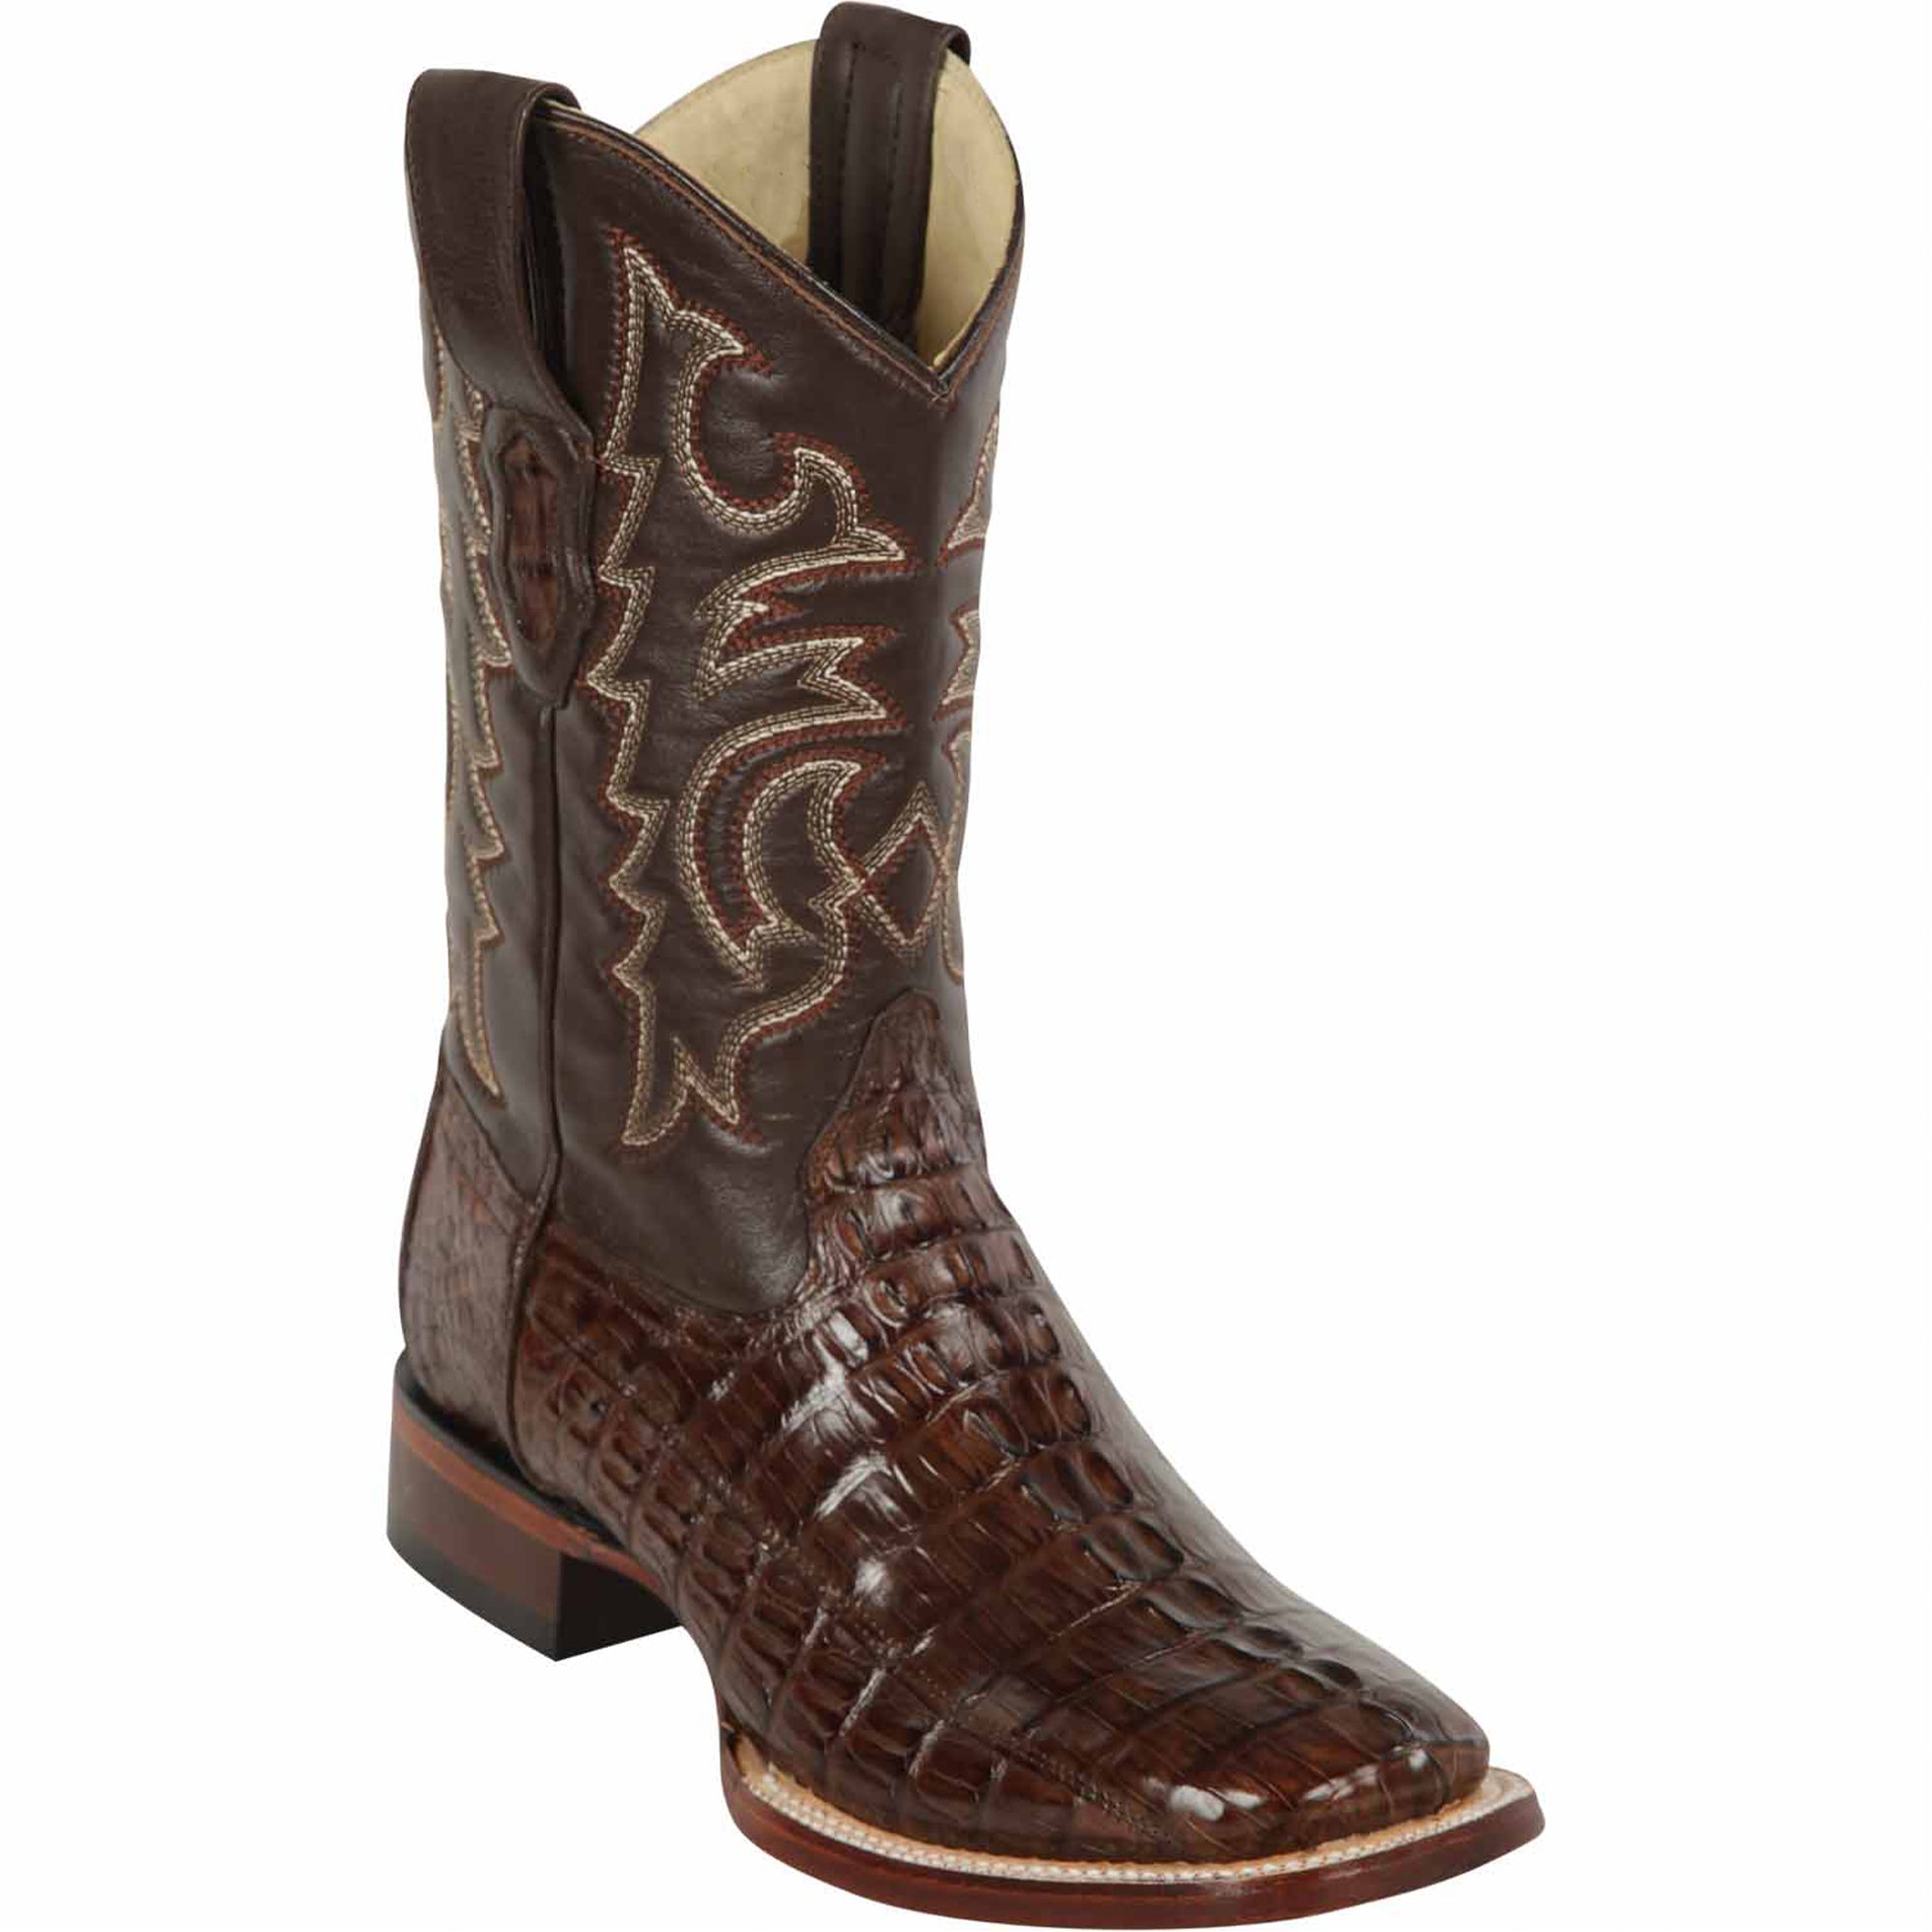 Men's Brown Square Toe Cowboy Boots Caiman Tail - Los Altos Boots